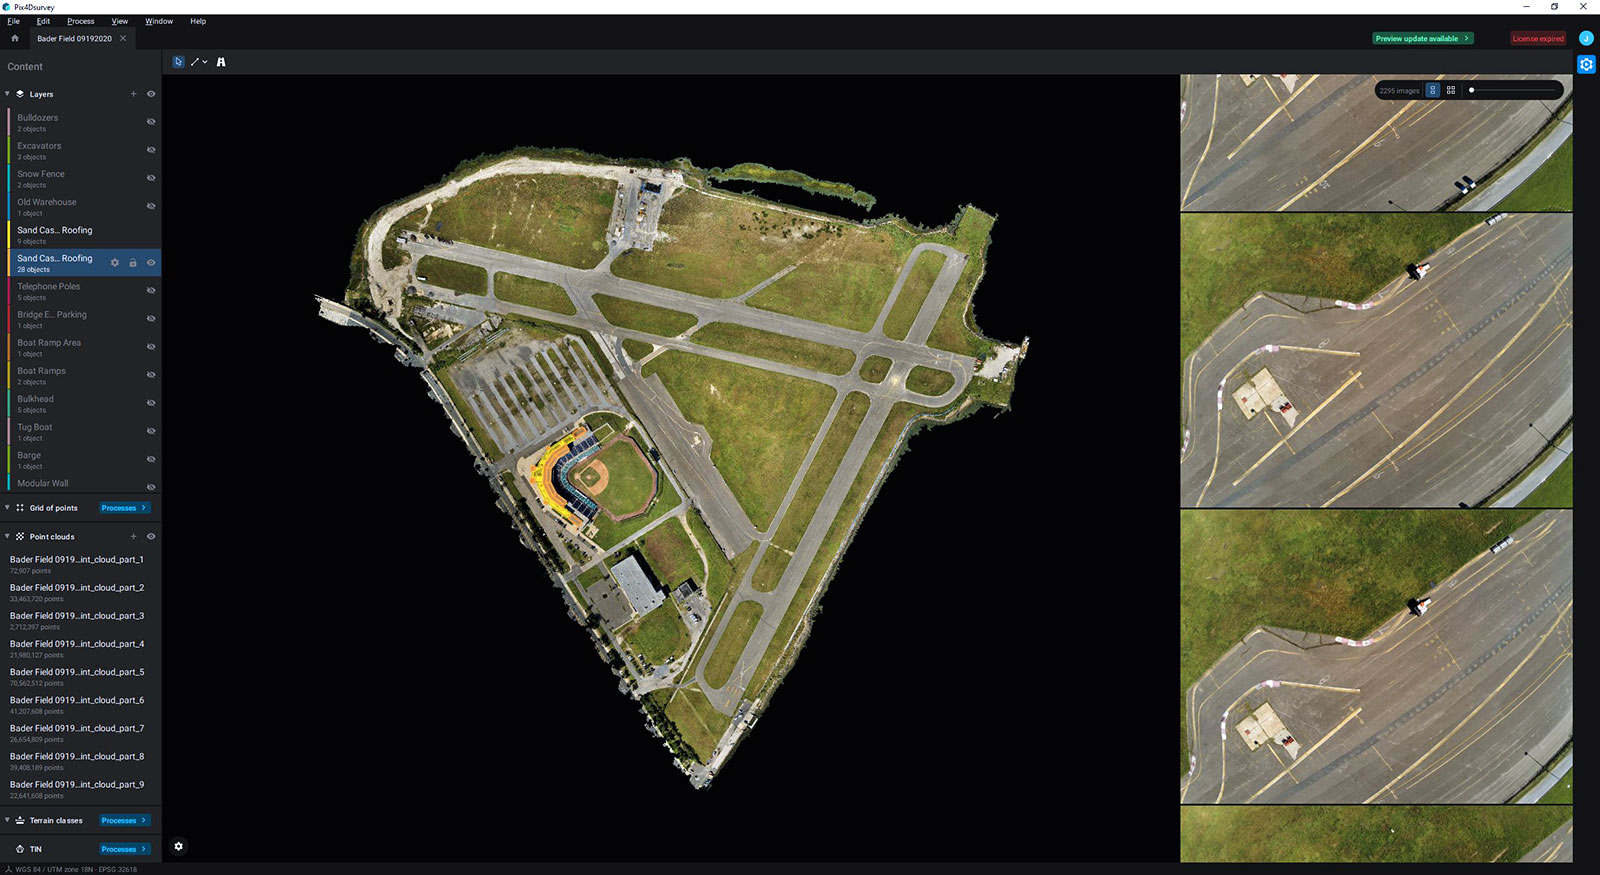 Atlantic City closes Bader Field's runway